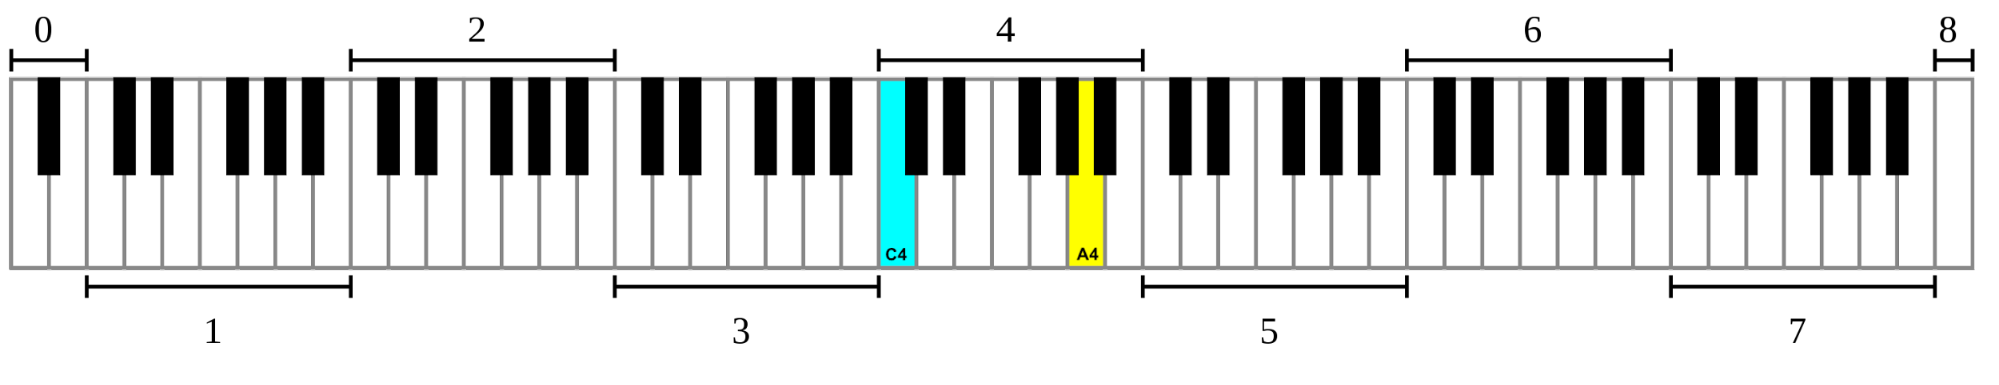 https://en.wikipedia.org/wiki/Piano_key_frequencies